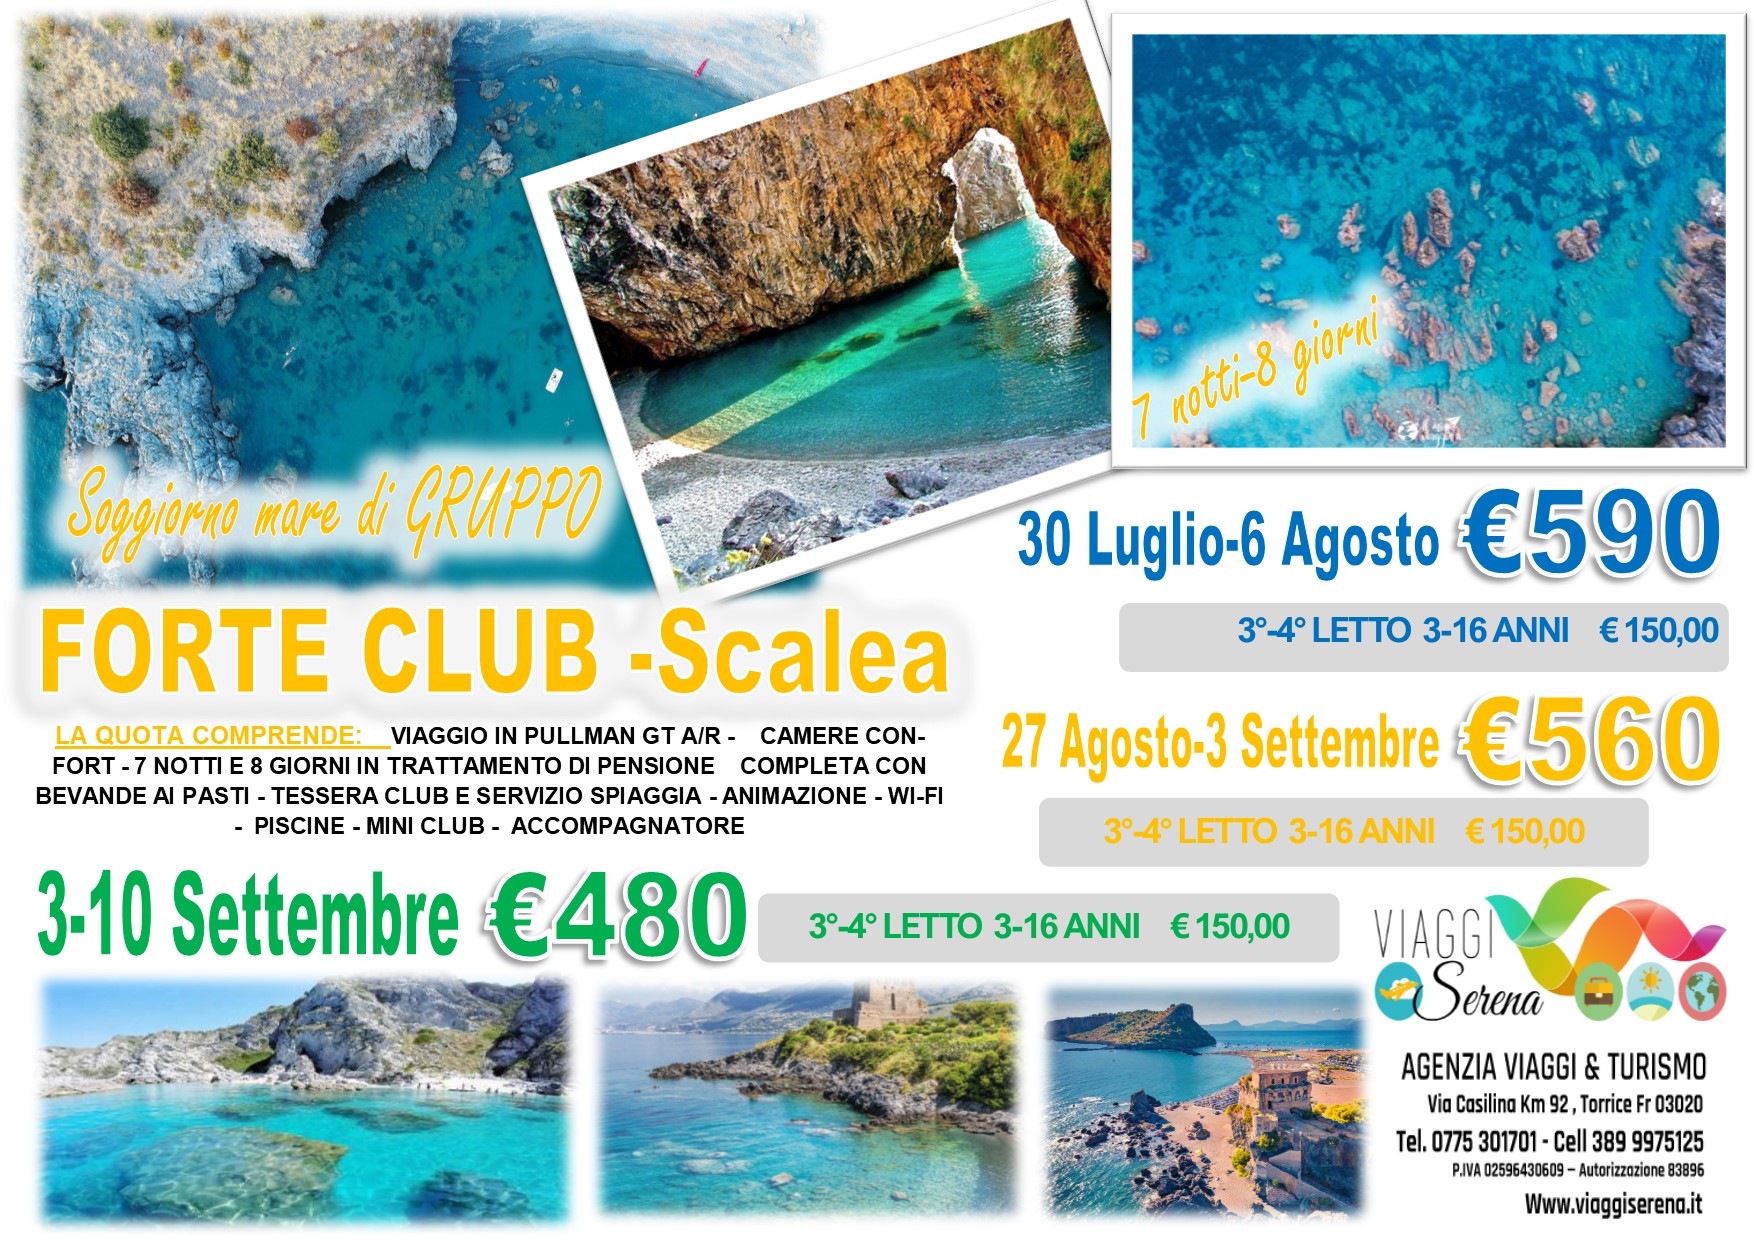 Viaggi di Gruppo: Soggiorno Mare “Villaggio Forte Club” Scalea 3-10 Settembre €480,00